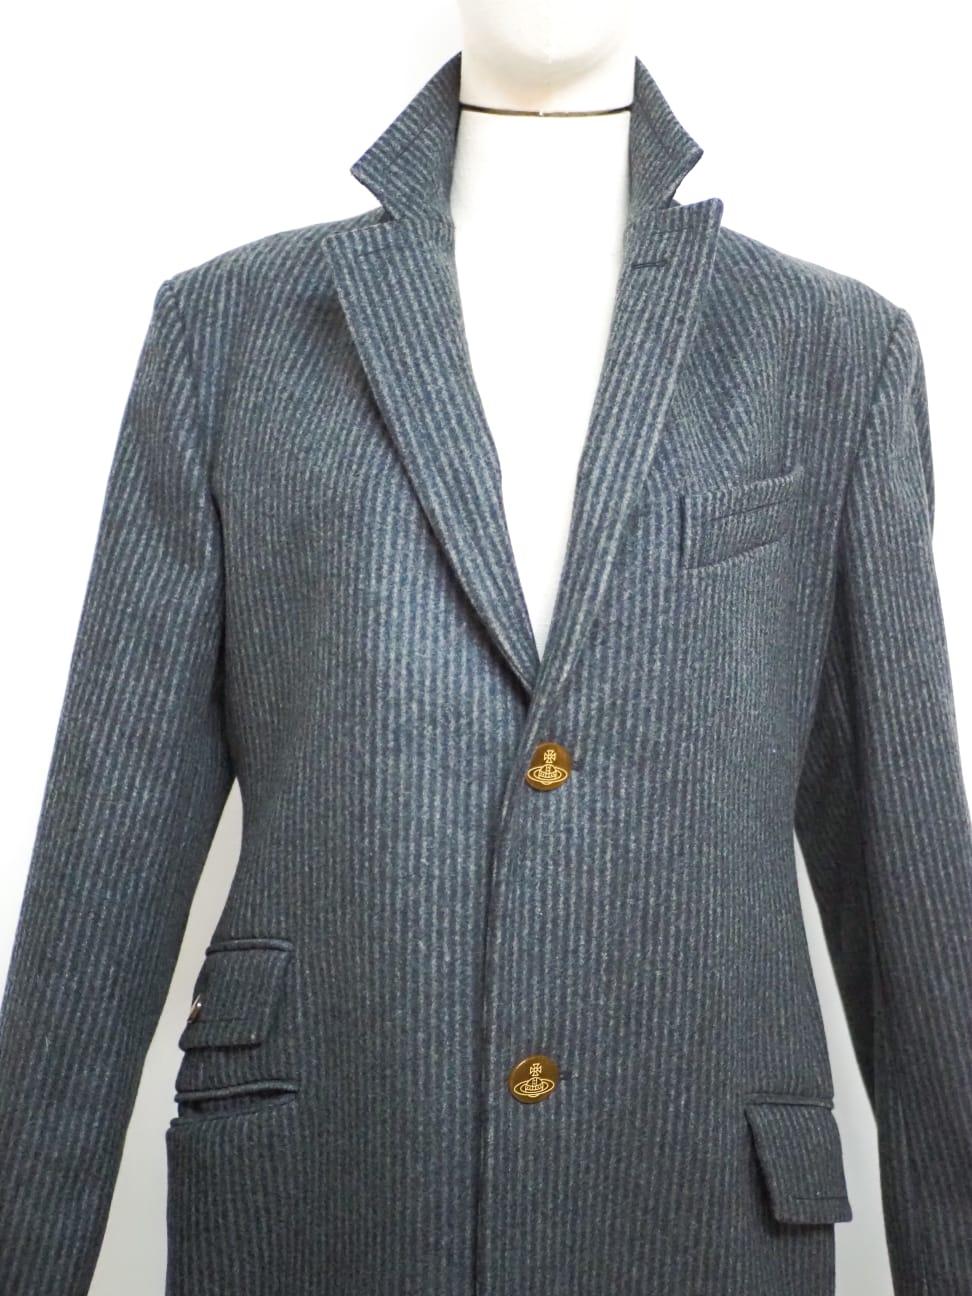 Vivienne Westwood wool coat For Sale 3